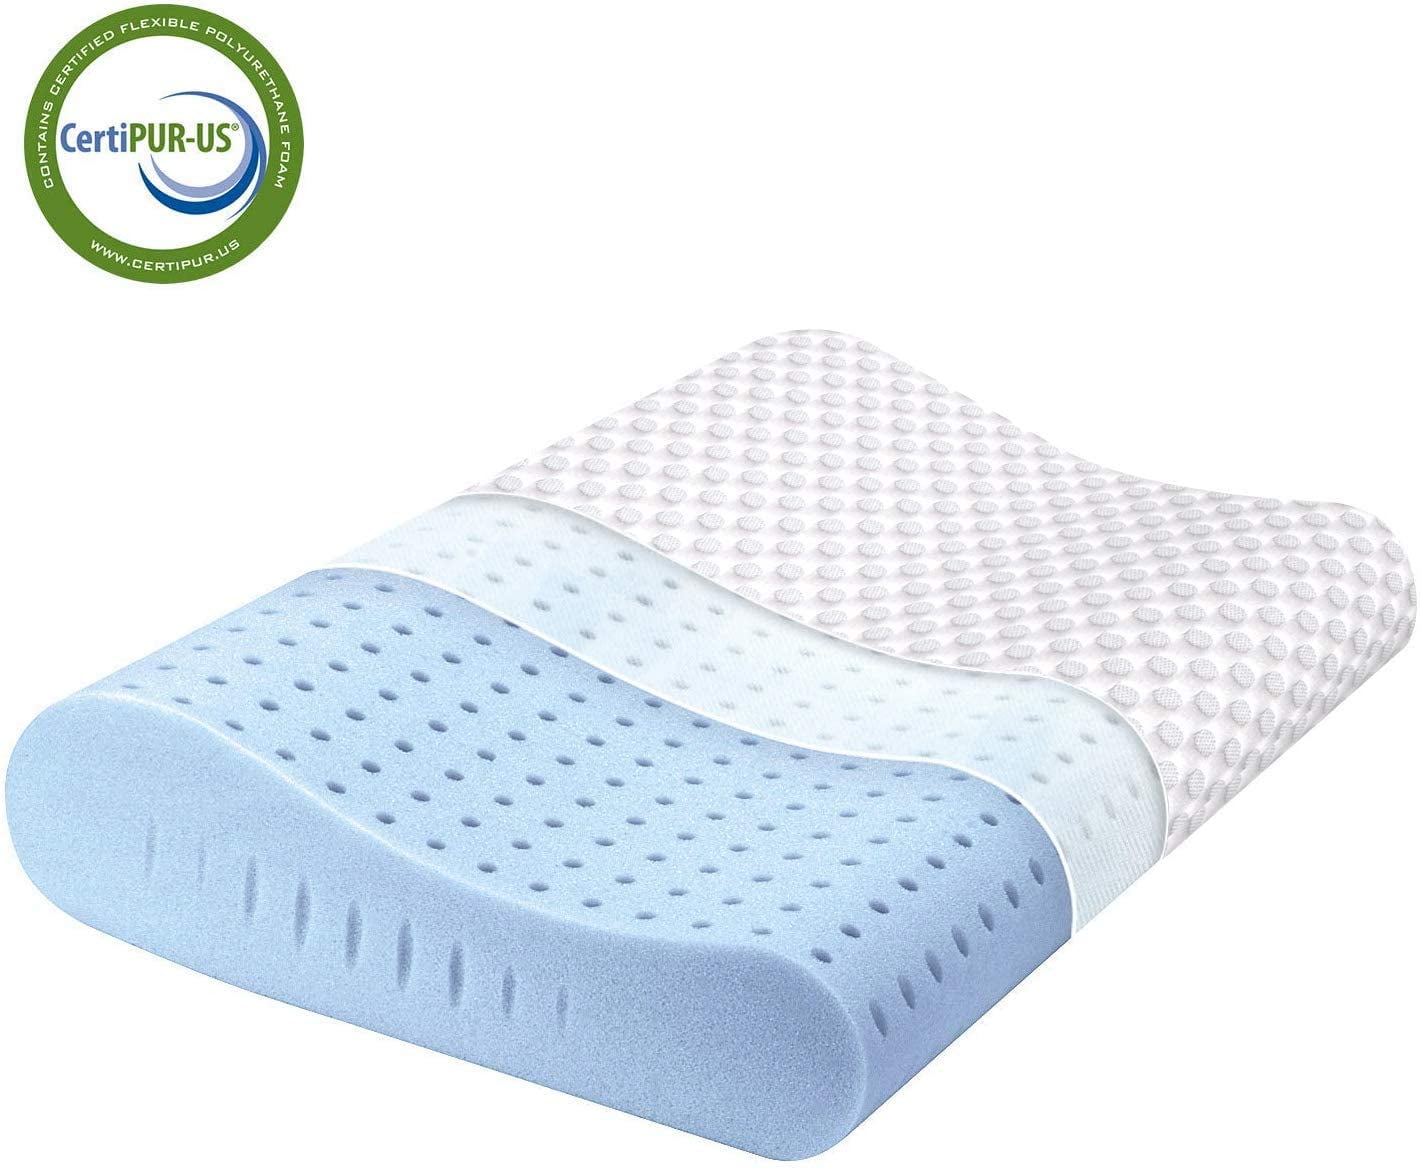 Milsleep Pair Memory Foam Pillows Bed Pillow Comfort Head Neck Support 